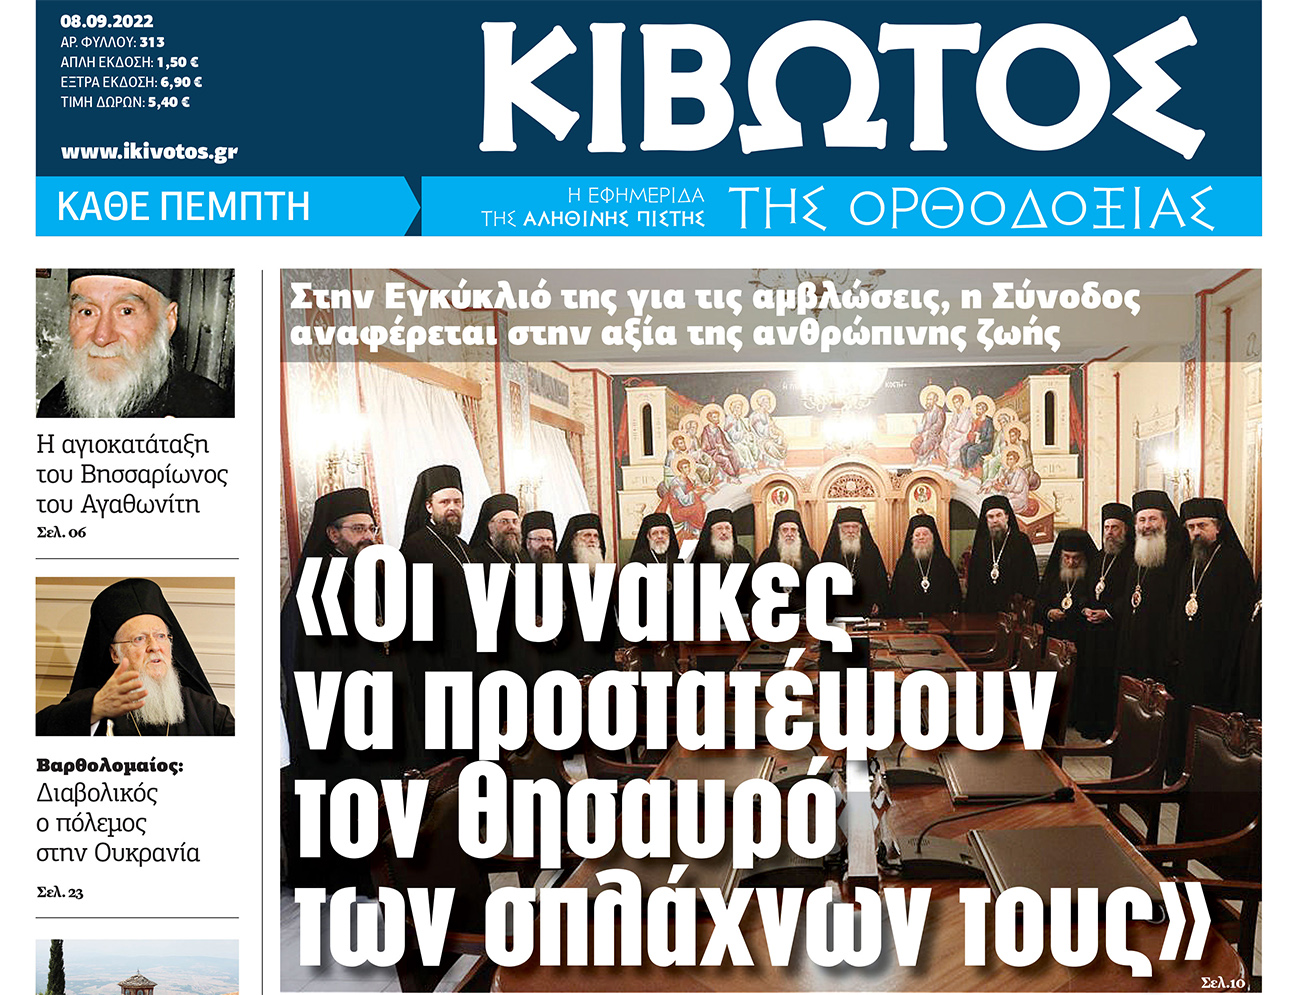 Σήμερα Πέμπτη 08 Σεπτεμβρίου, κυκλοφορεί το νέο φύλλο της Εφημερίδας «Κιβωτός της Ορθοδοξίας»